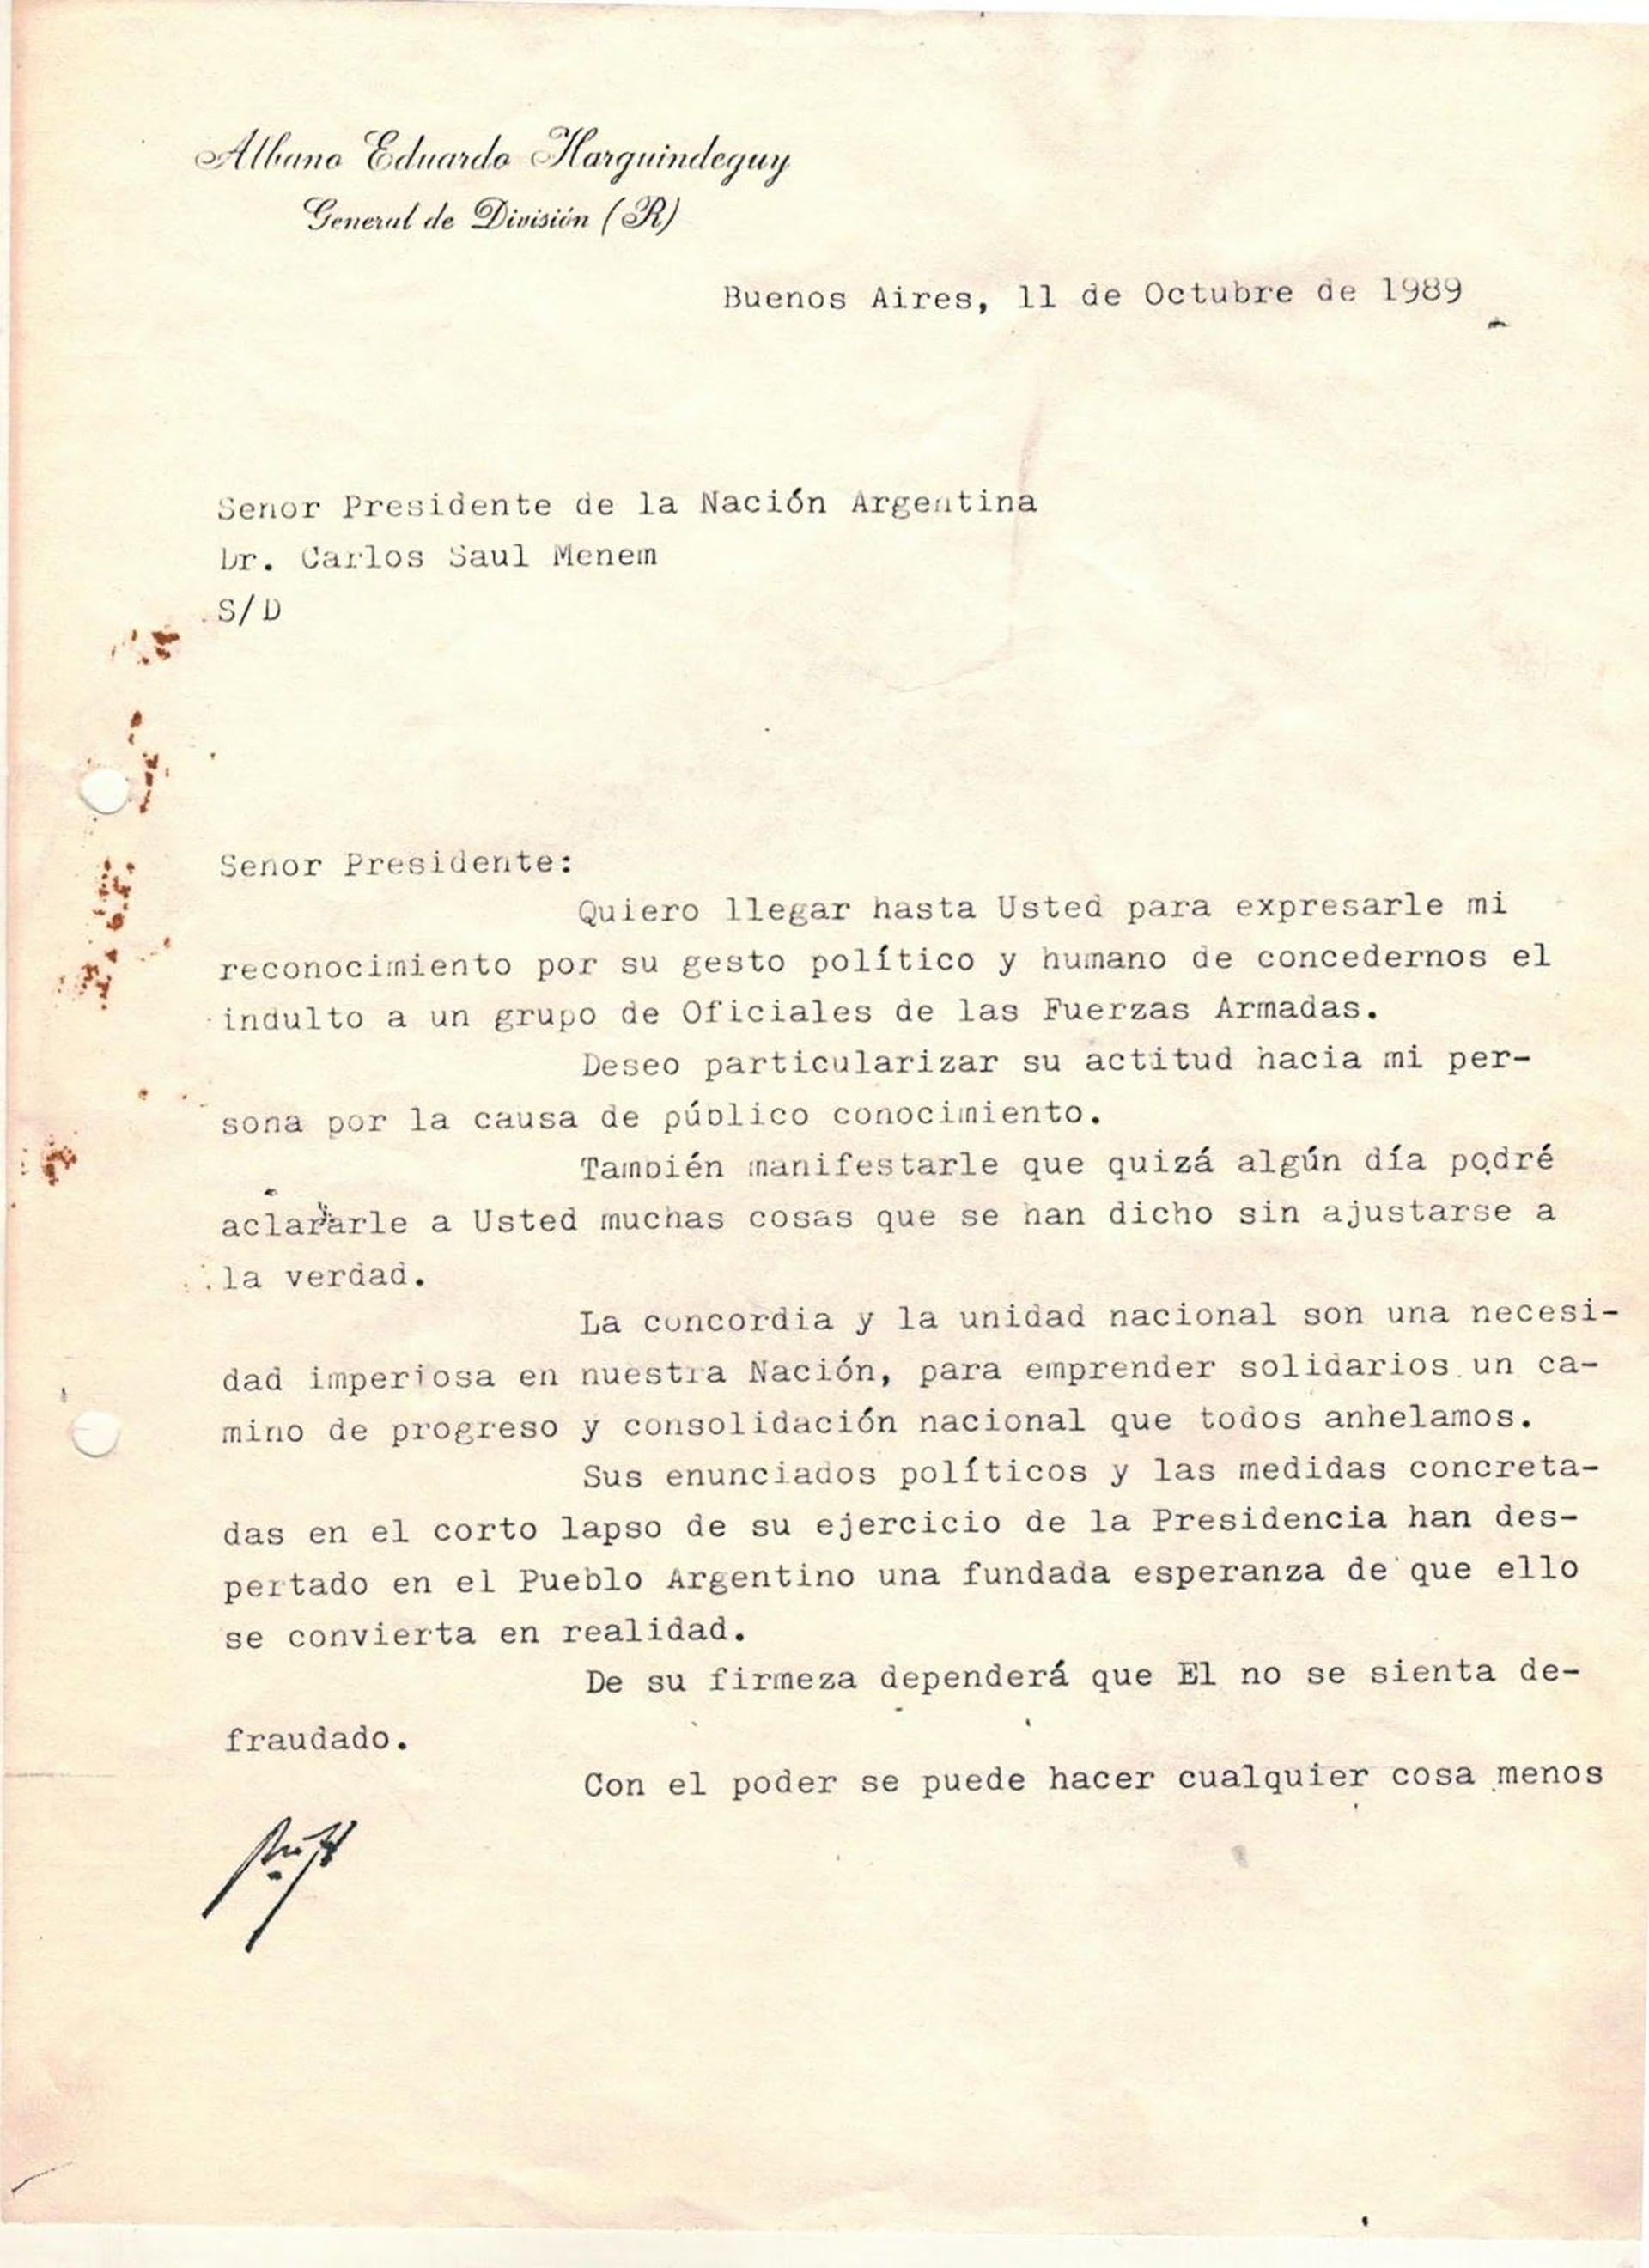 Primera página de la carta de agradecimiento del general Harguindeguy a Menem.